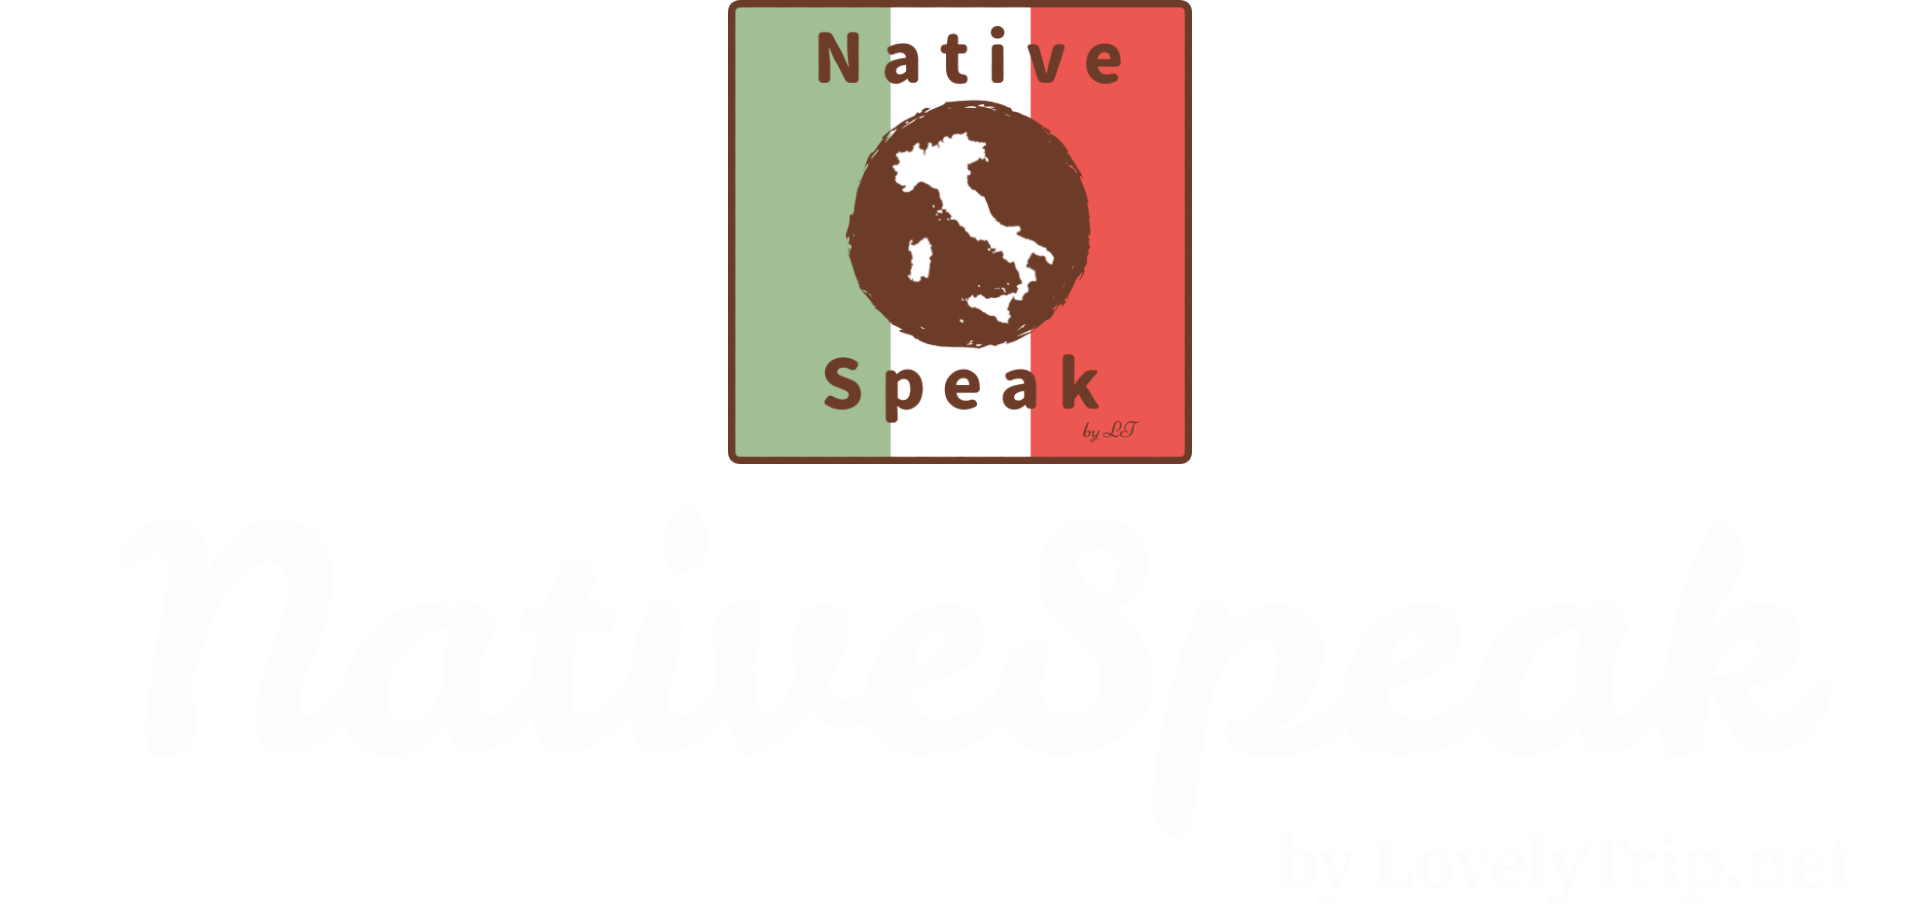 NativeSpeak